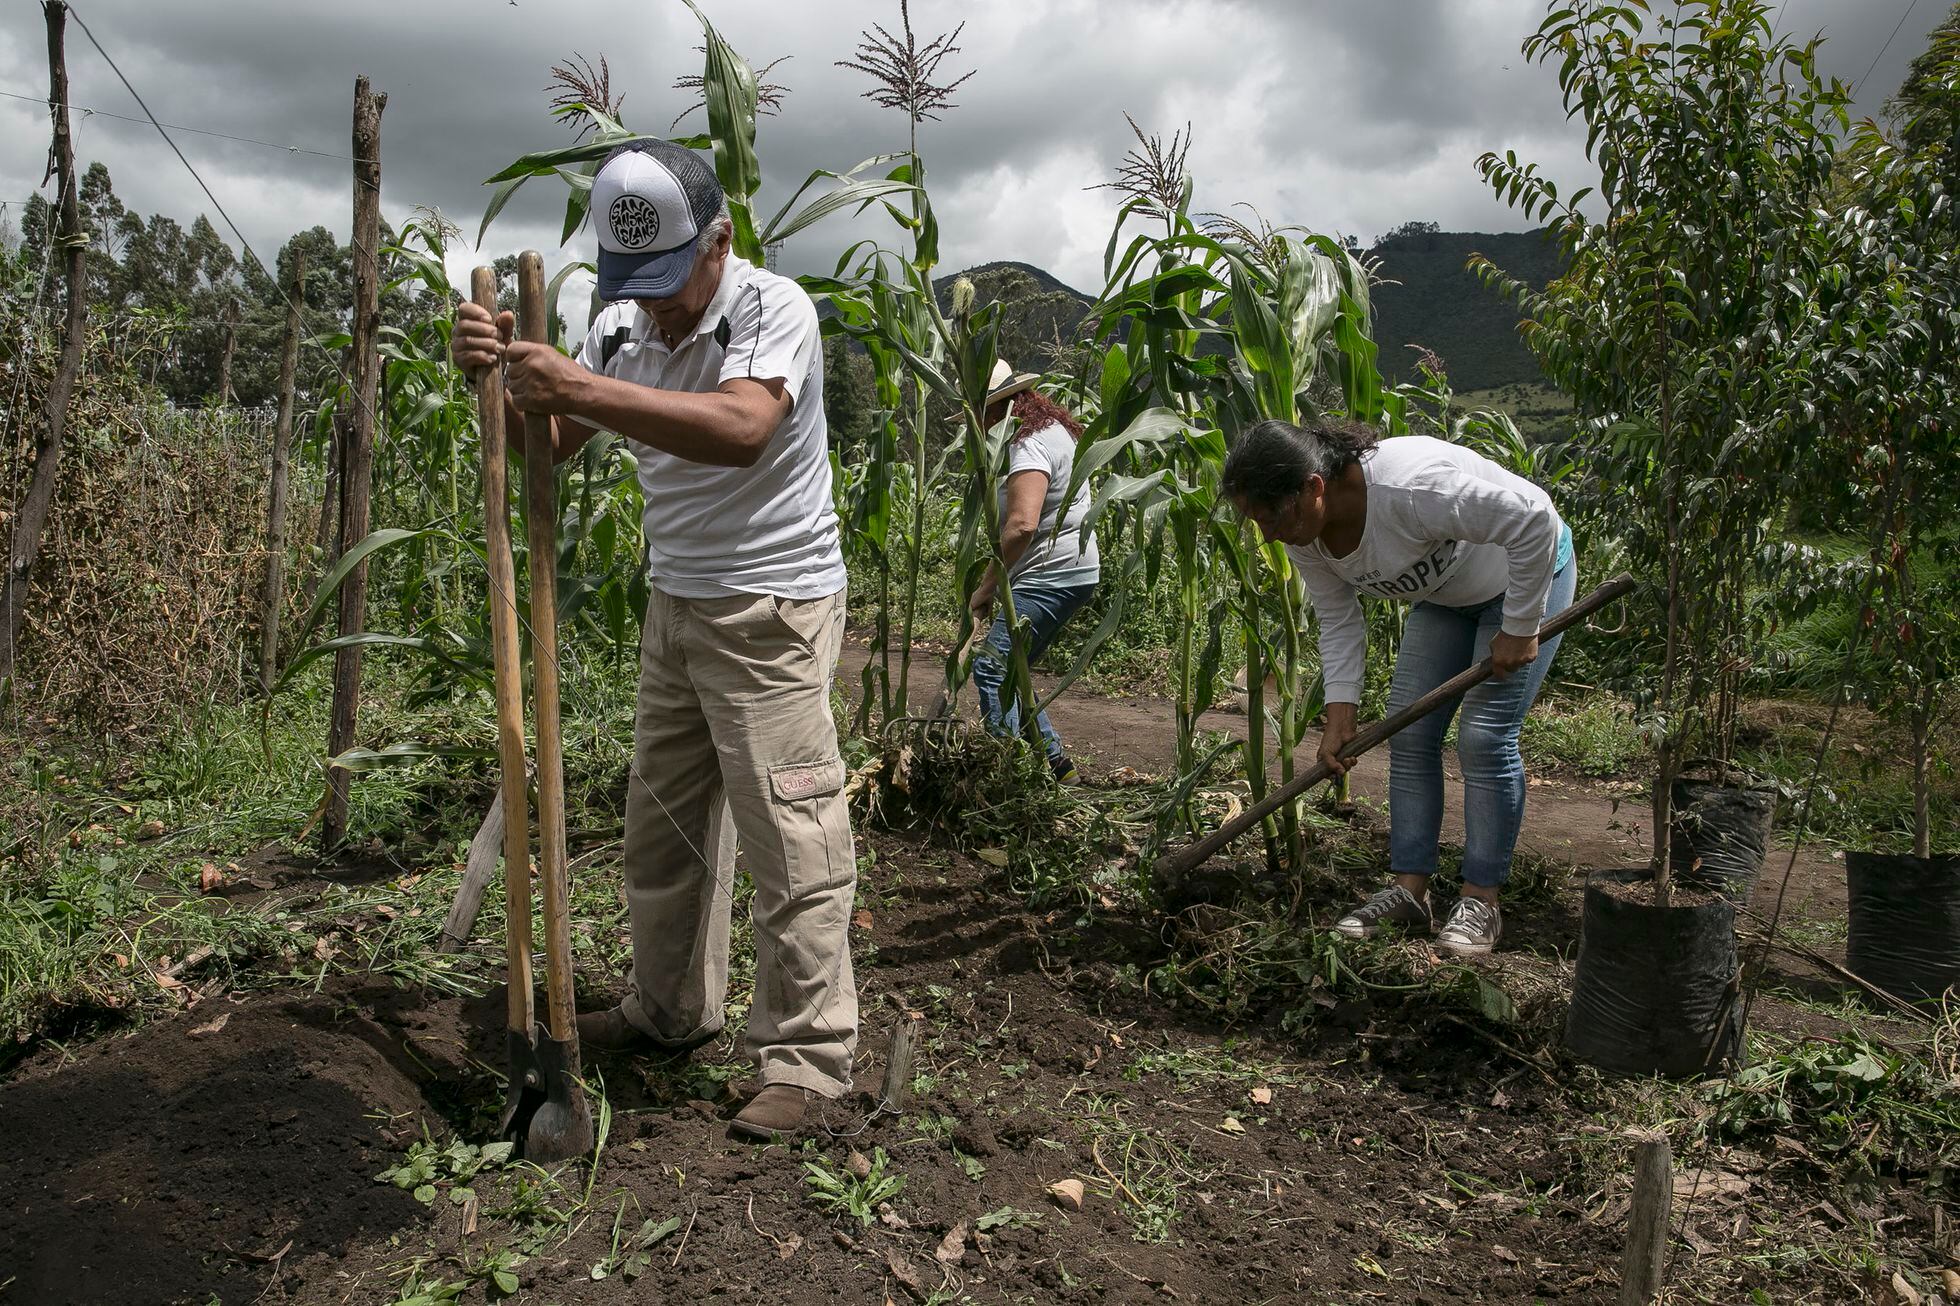 Personas trabajan en un campo de cultivo dentro del campus del centro de formación.